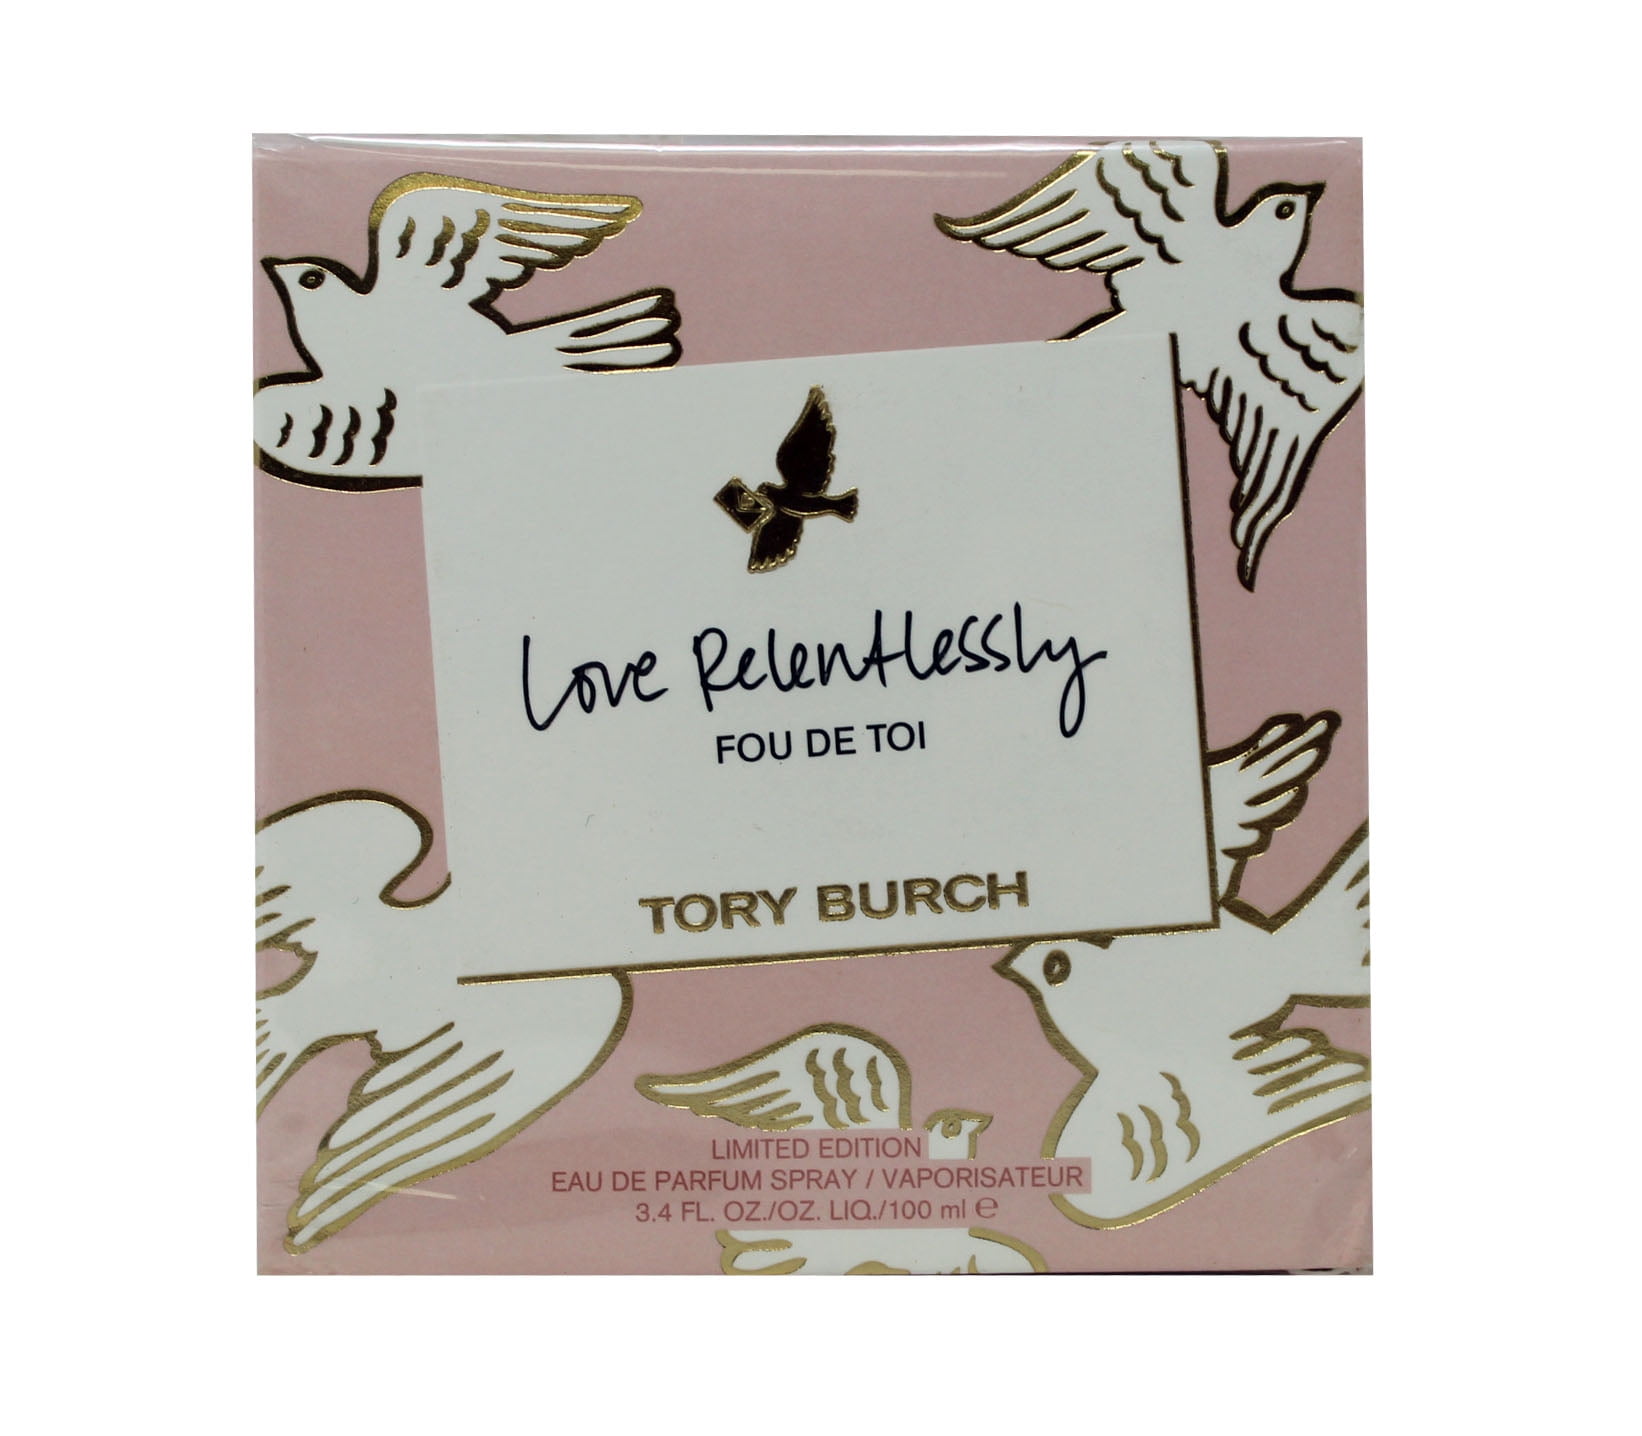 Tory Burch Love Relentlessly Fou De Toi Limited Edition Eau De Parfum   Ounces 